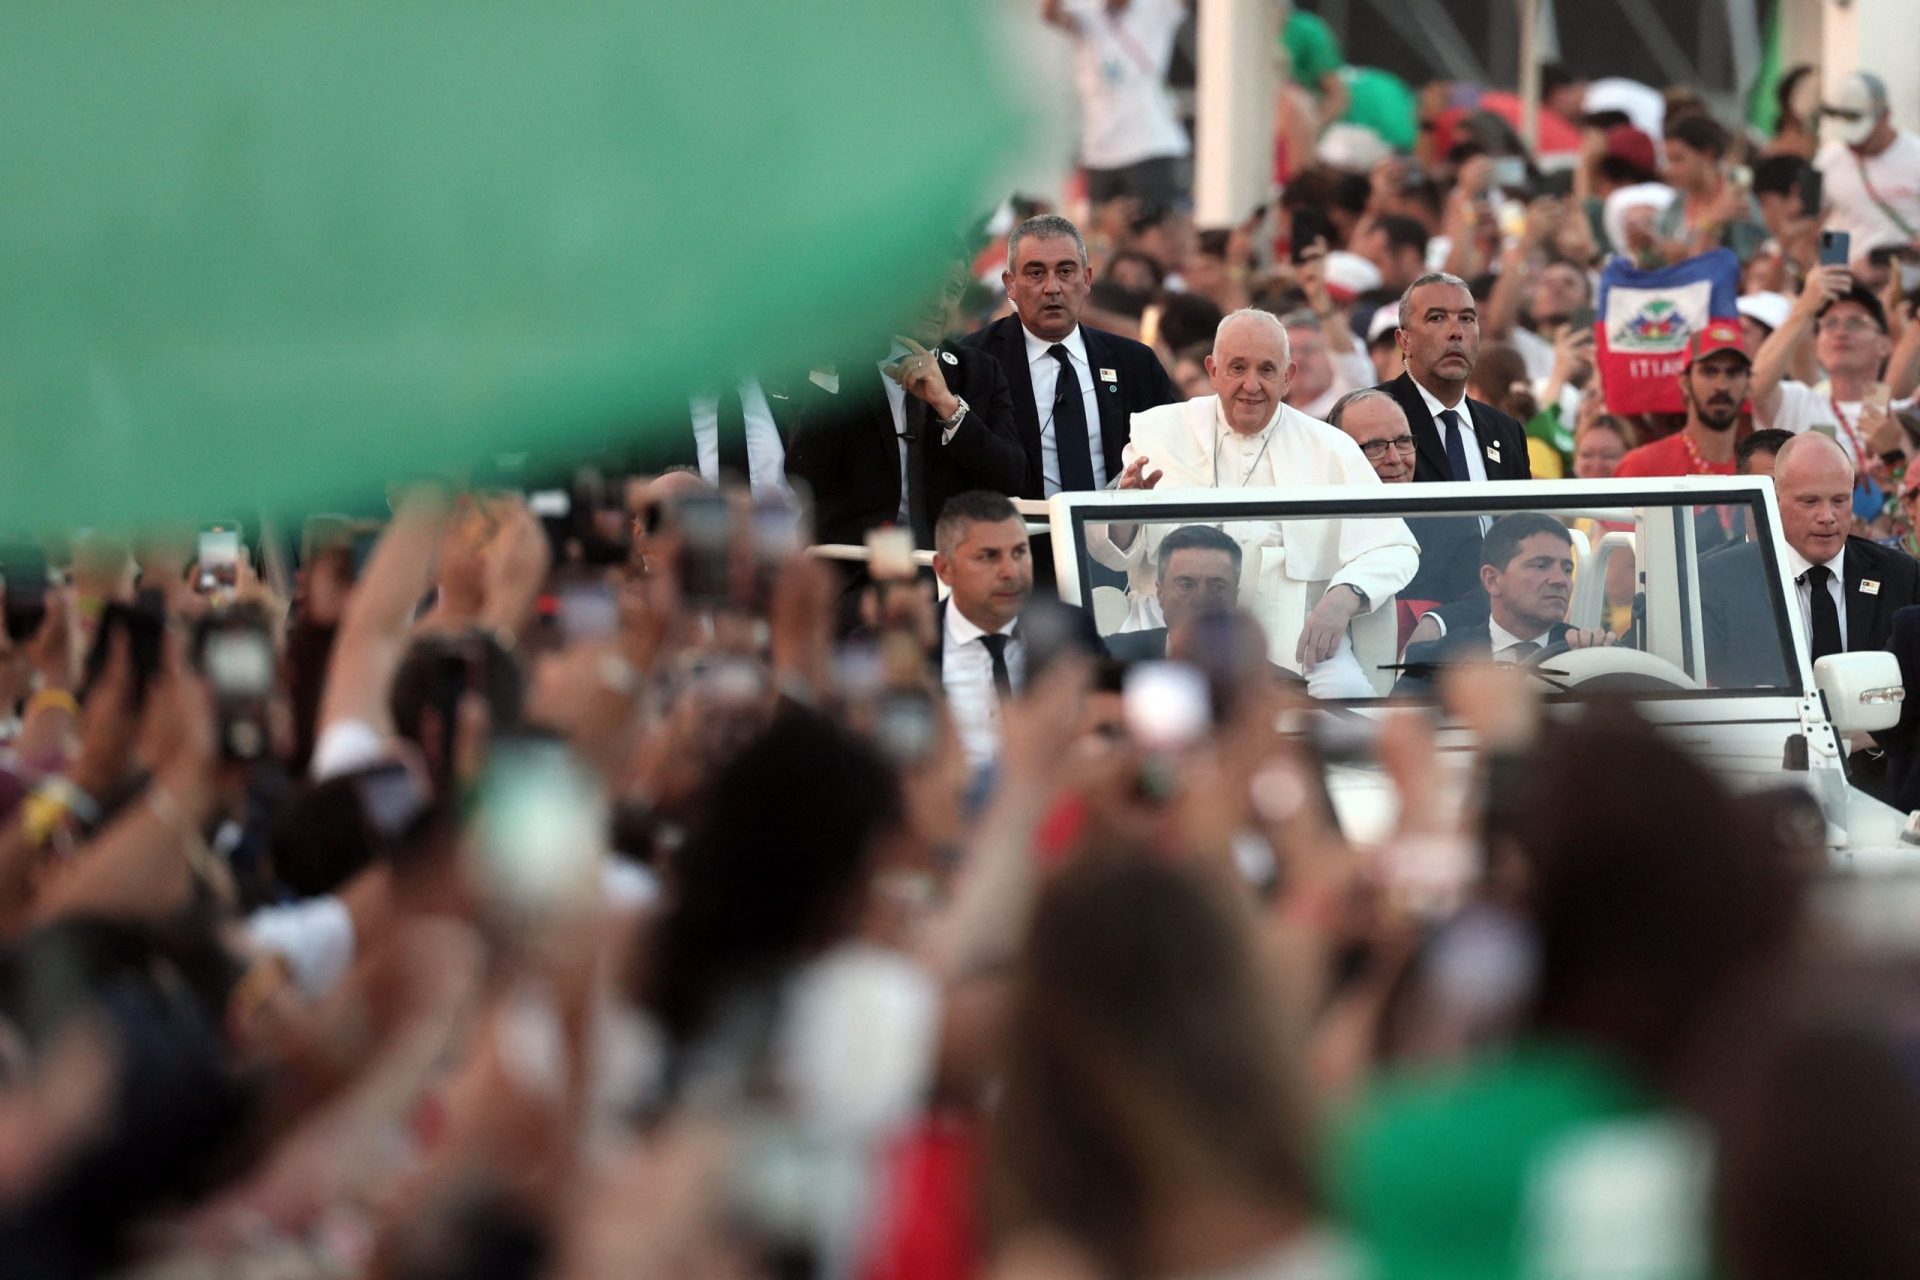 Acompanhe em direto. Centenas de milhares de pessoas na vigília com o Papa